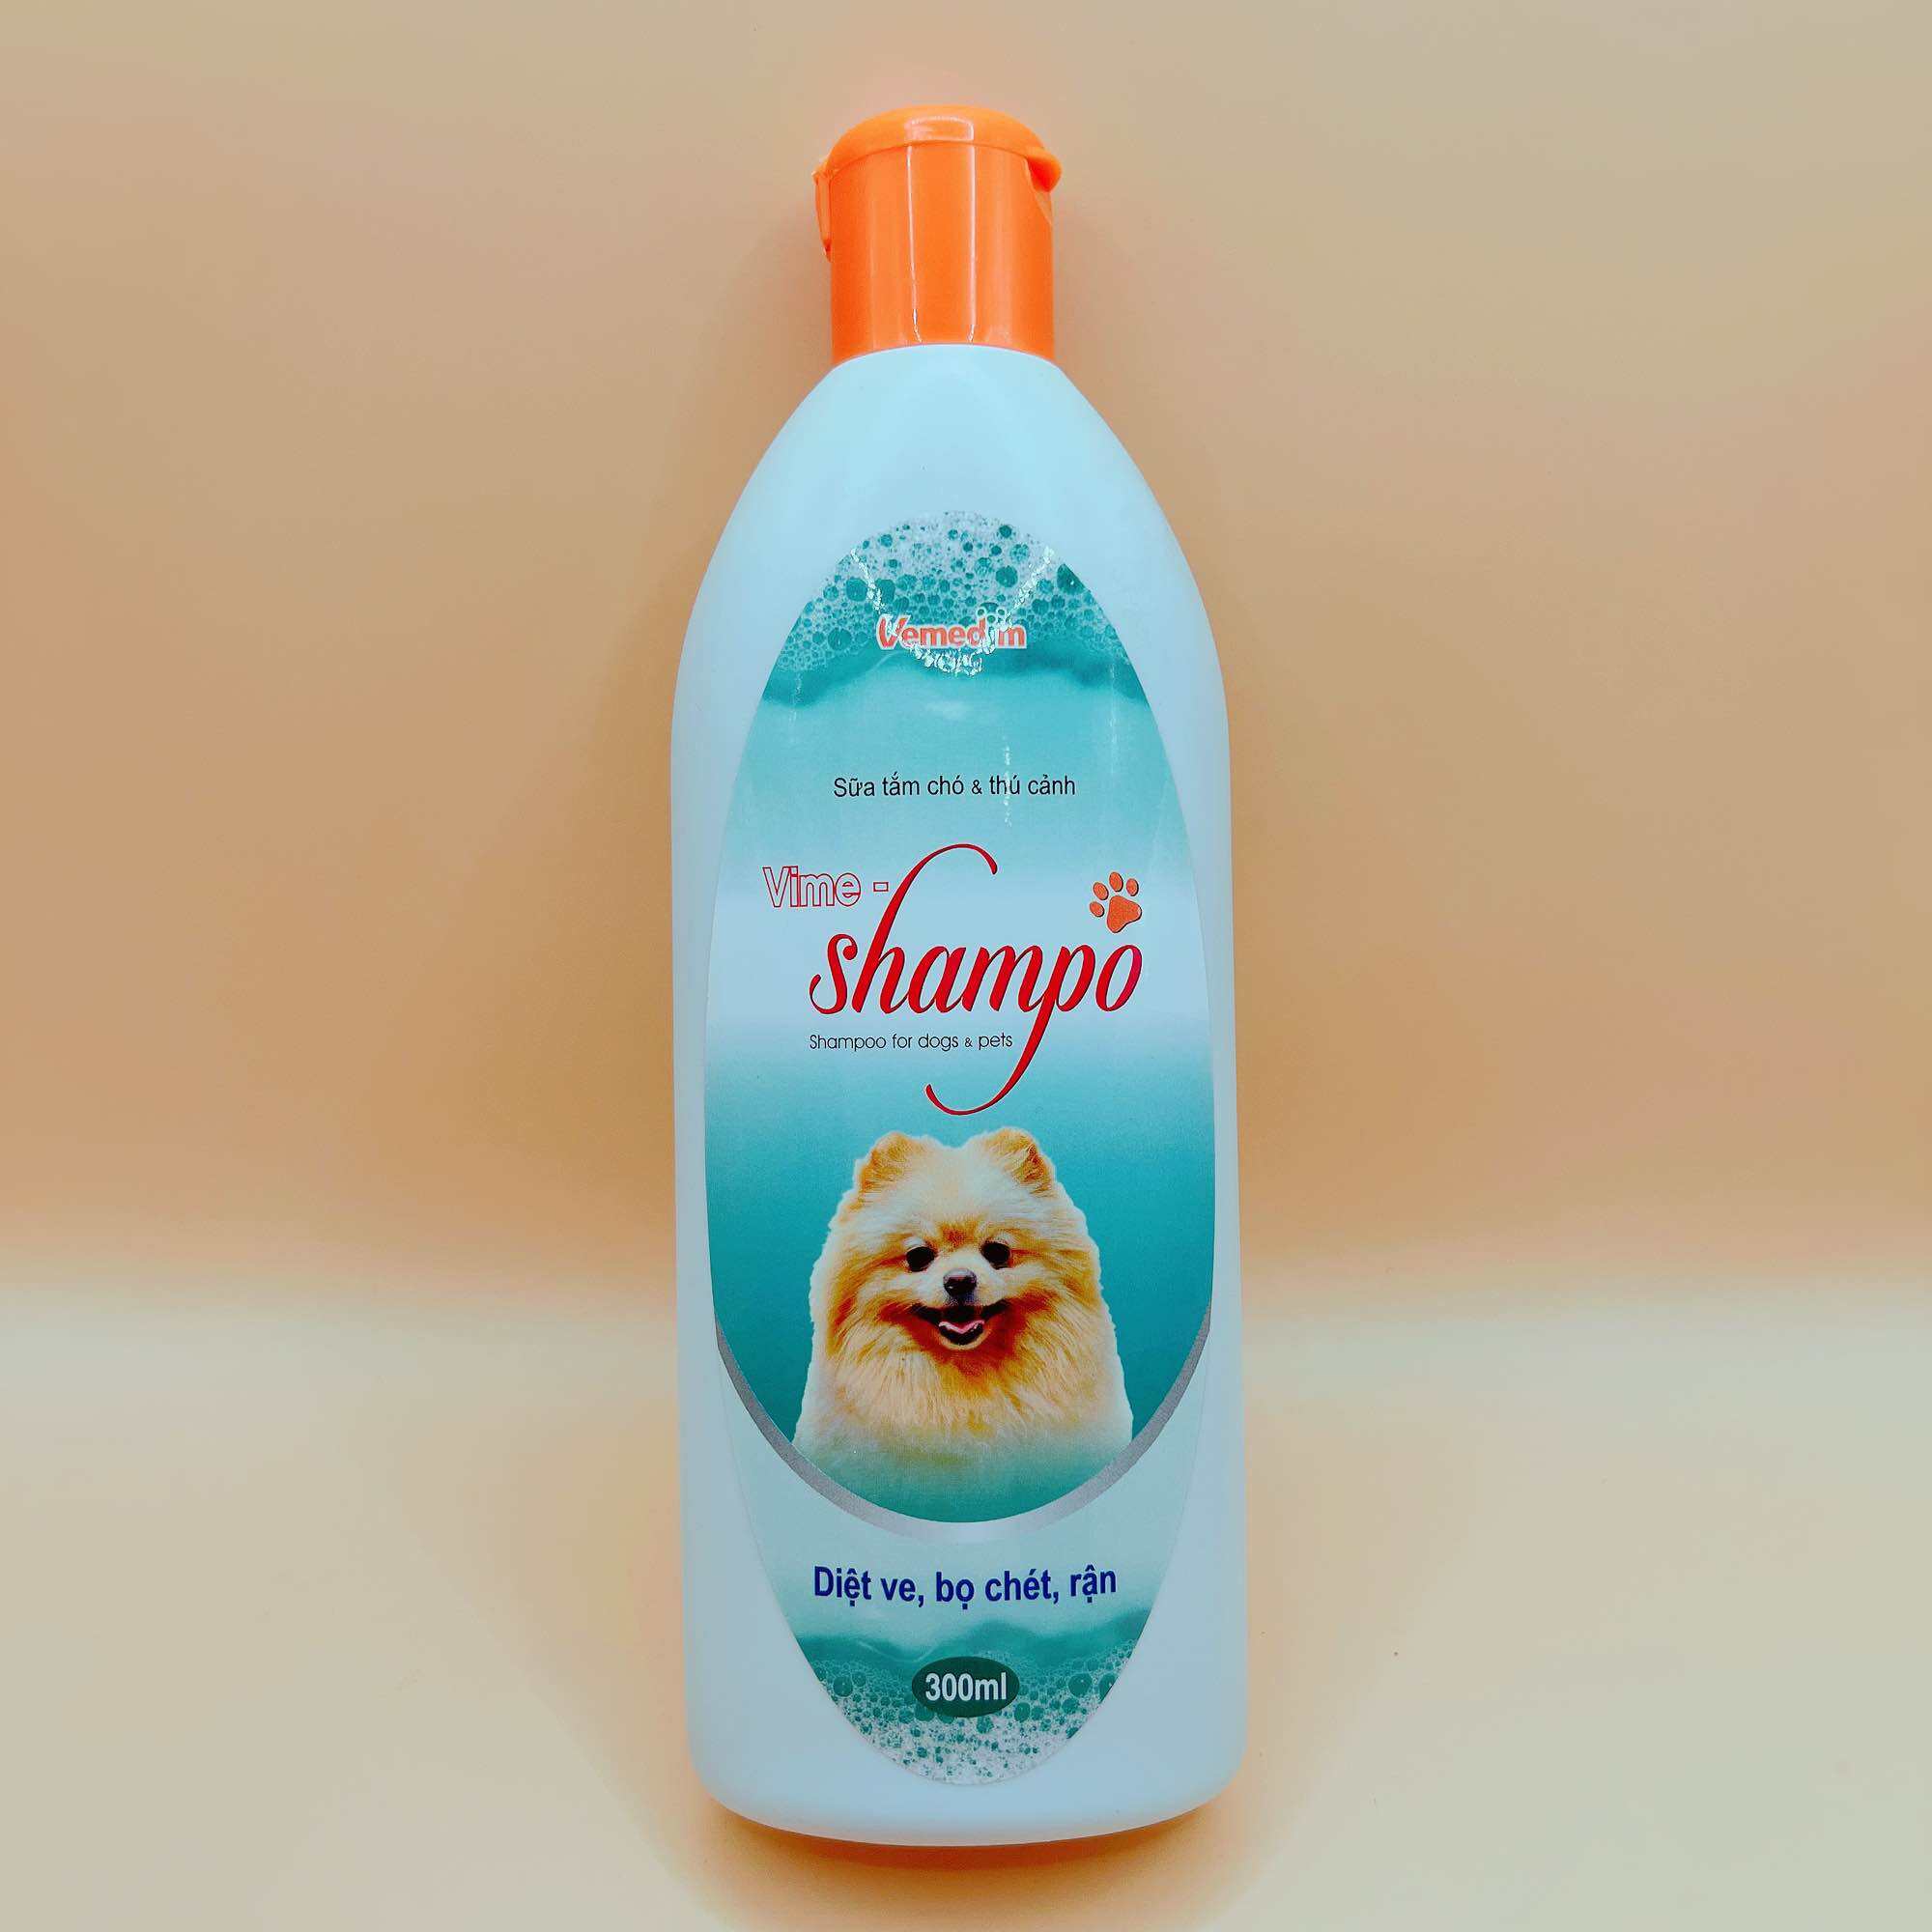 Vime-Shampo 300ml VMD sữa tắm chó trị ve, bọ chét, rận trên chó mèo